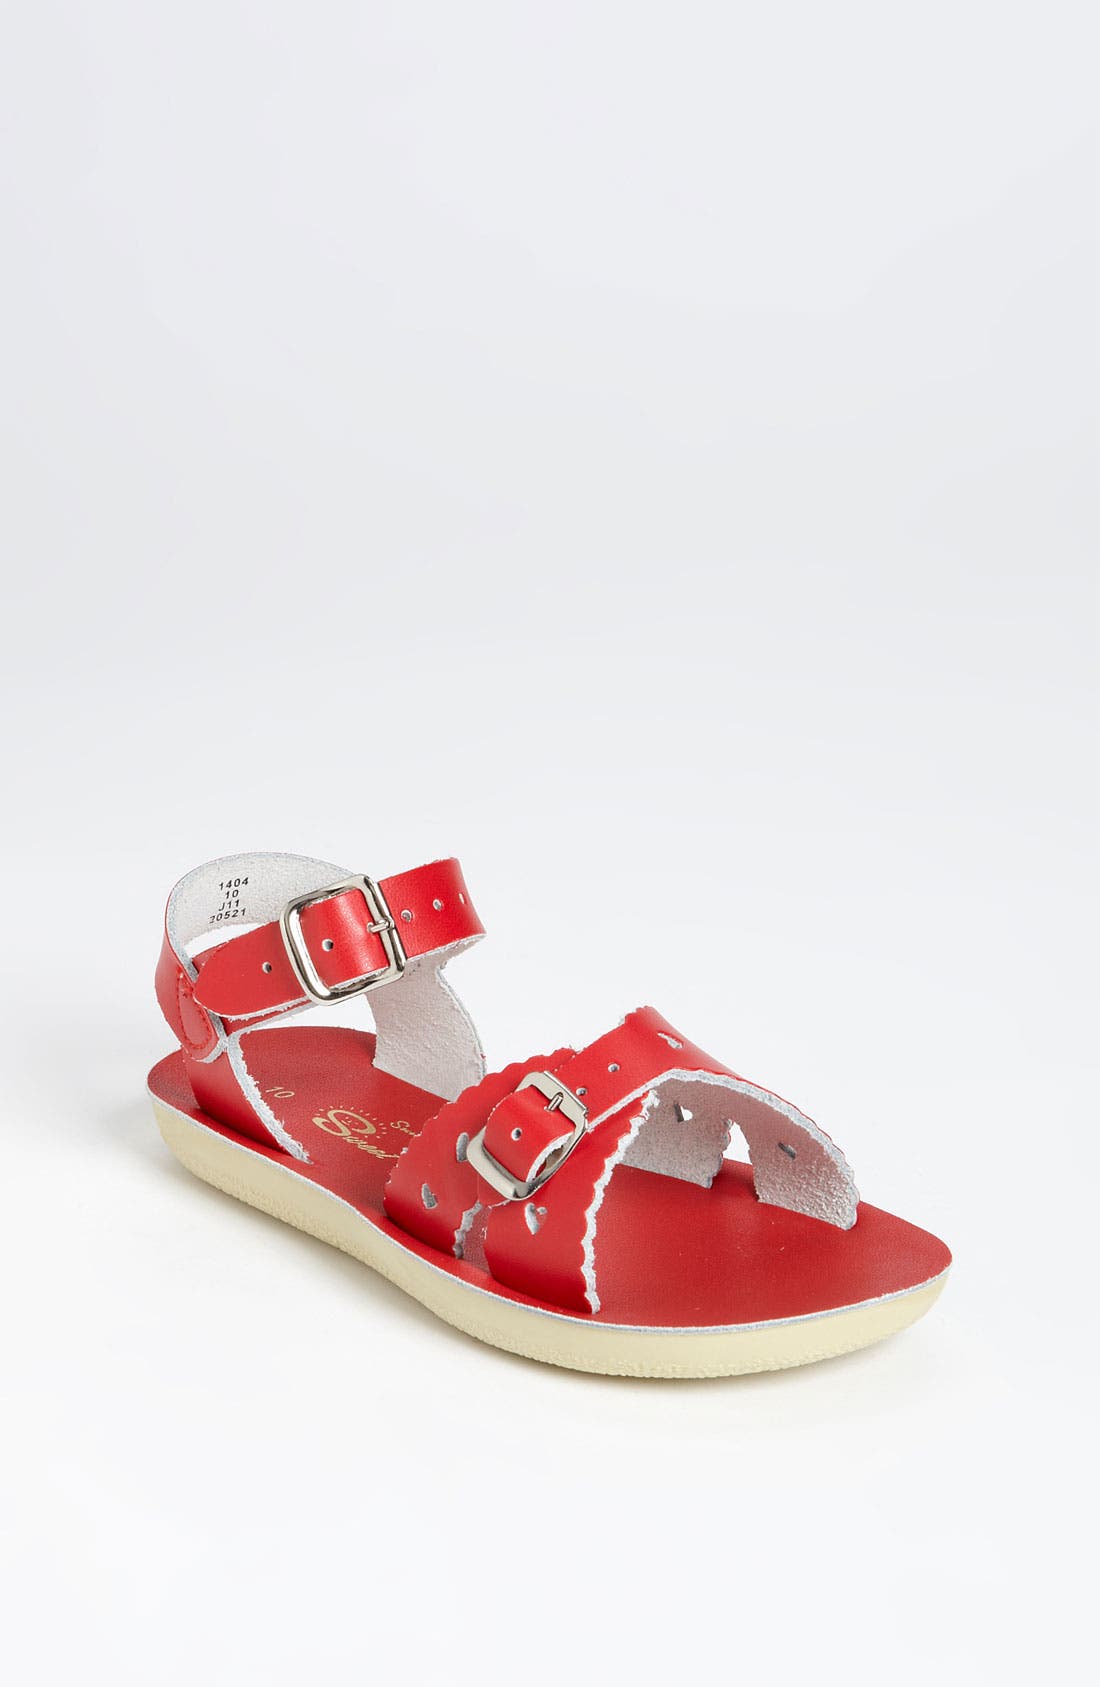 Salt Water Sandals by Hoy Shoe Infant Sun-San Sailor Flat Sandal White Size 1 